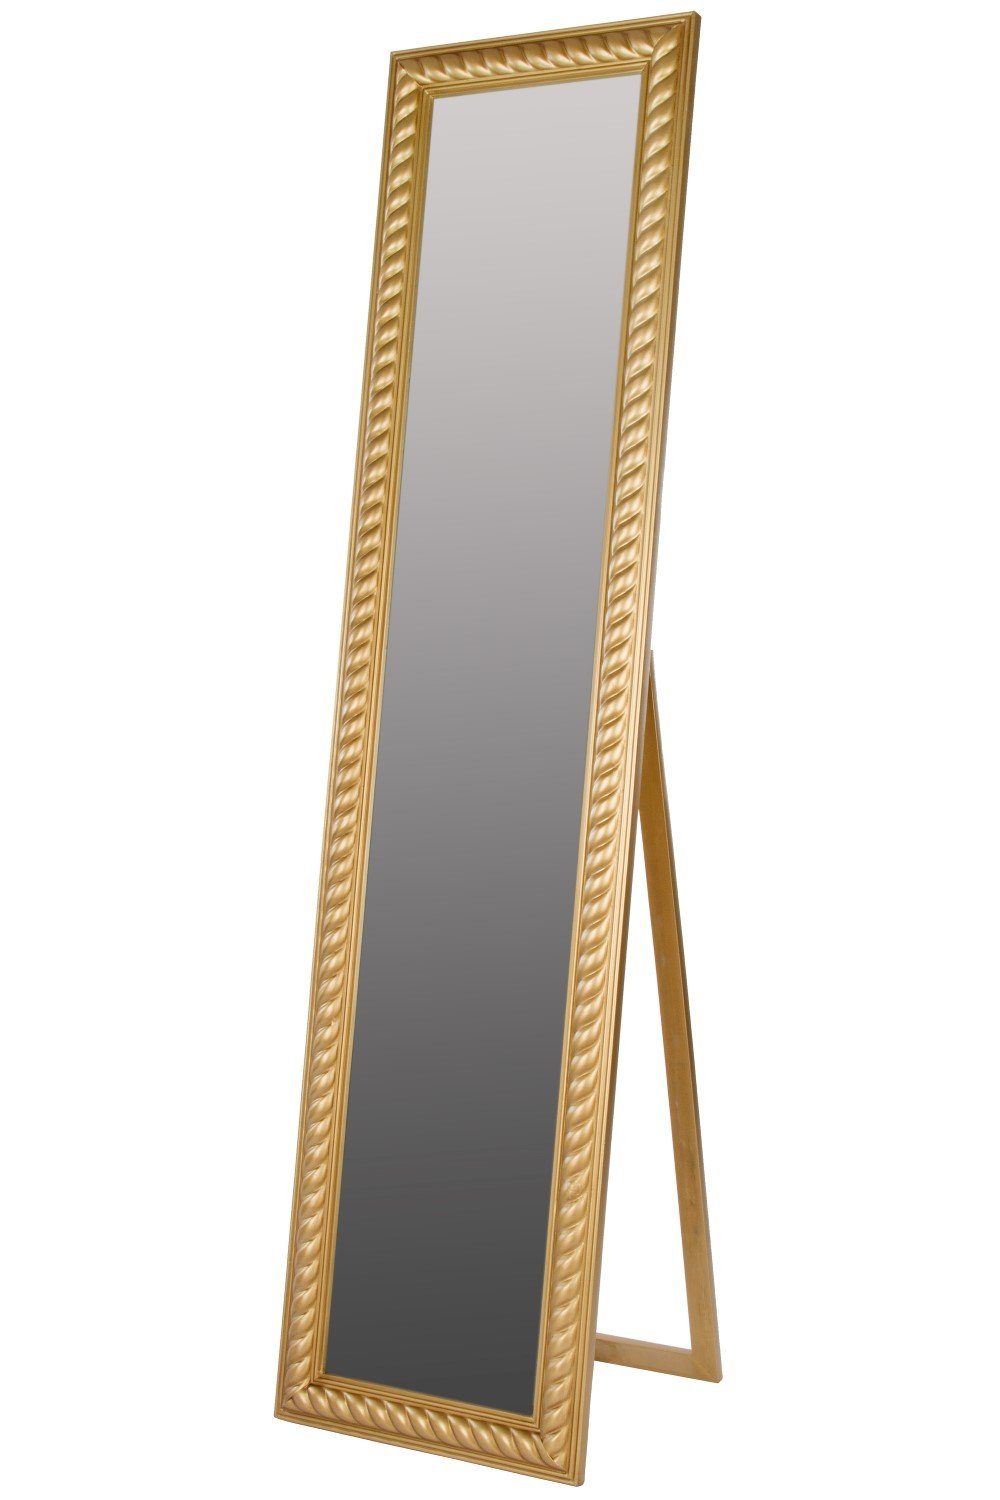 elbmöbel Standspiegel Standspiegel 180x45x7cm, Spiegel: Ganzkörperspiegel 180x45x7 cm Landhausstil gold | Standspiegel